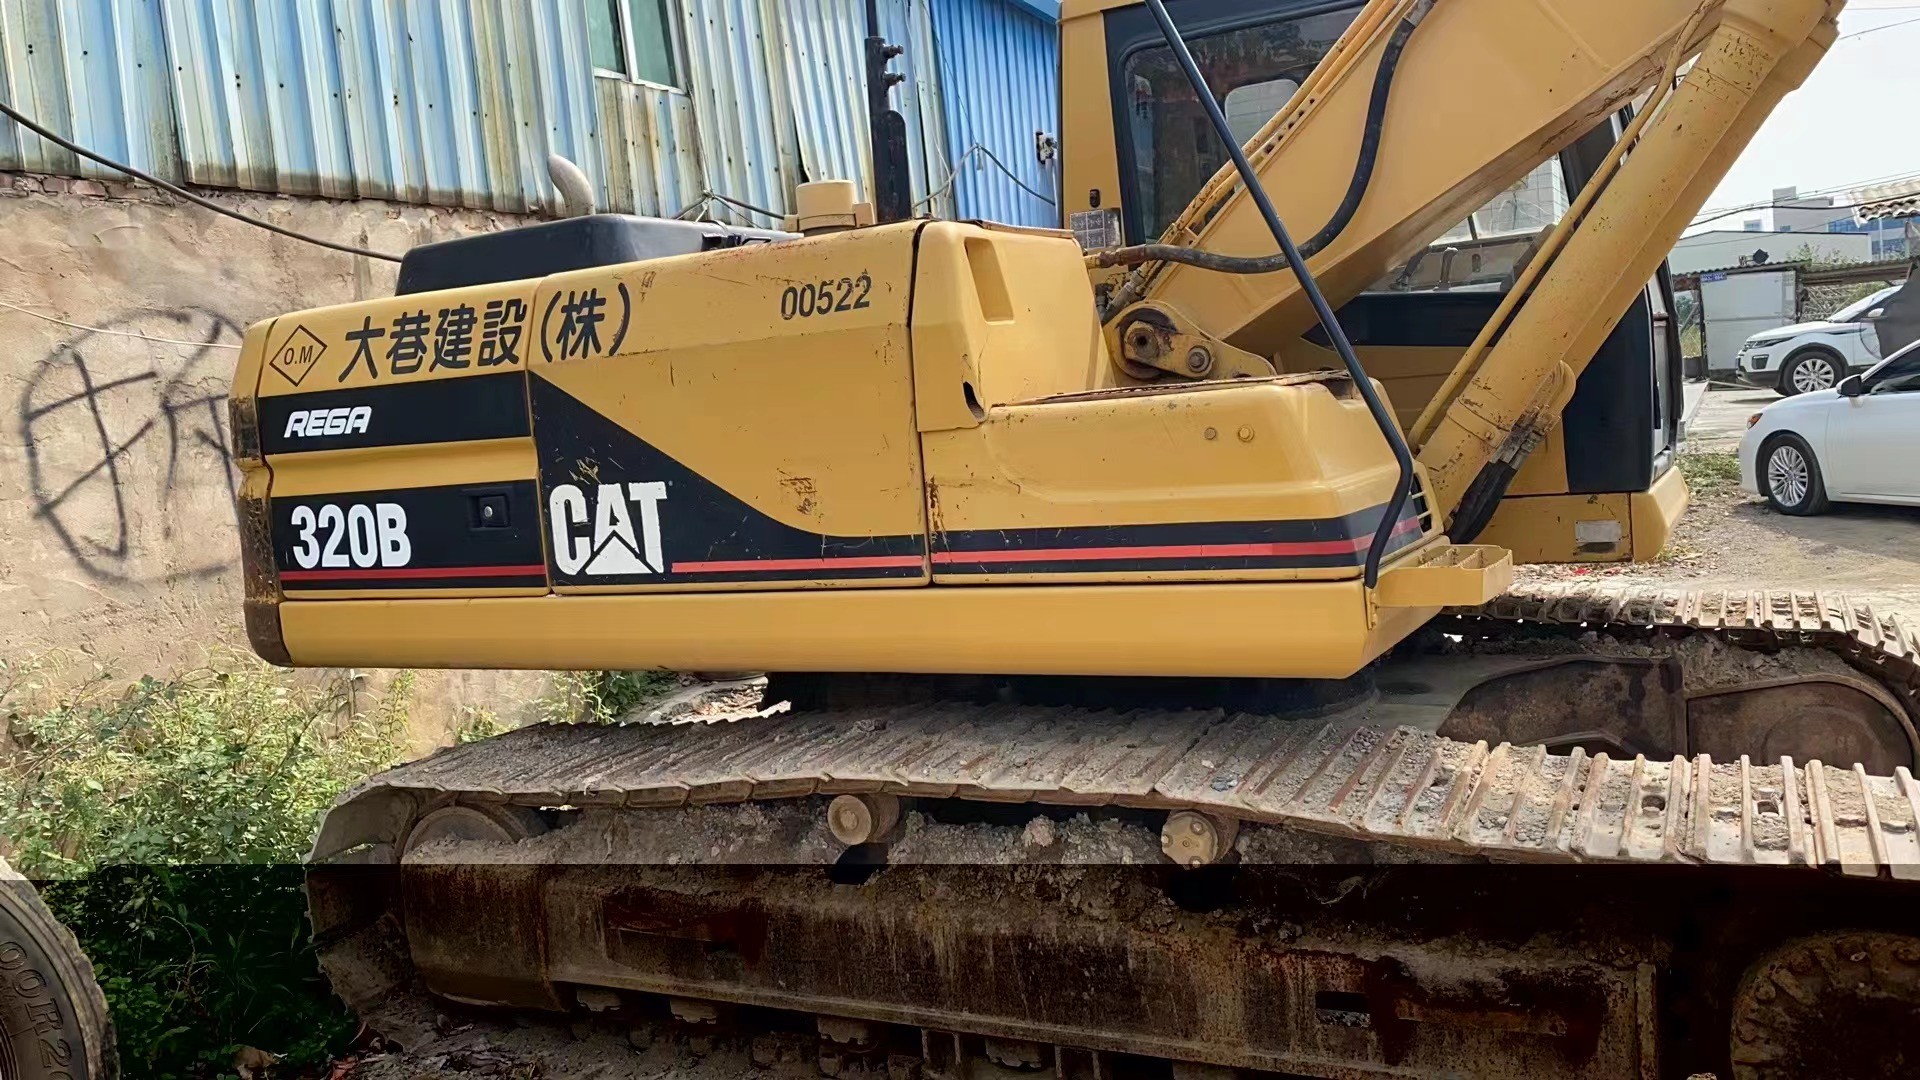 Buy cheap CAT320B excavatororiginal japan CAT300B 320B 330B CAT 320BL CAT320B excavator product